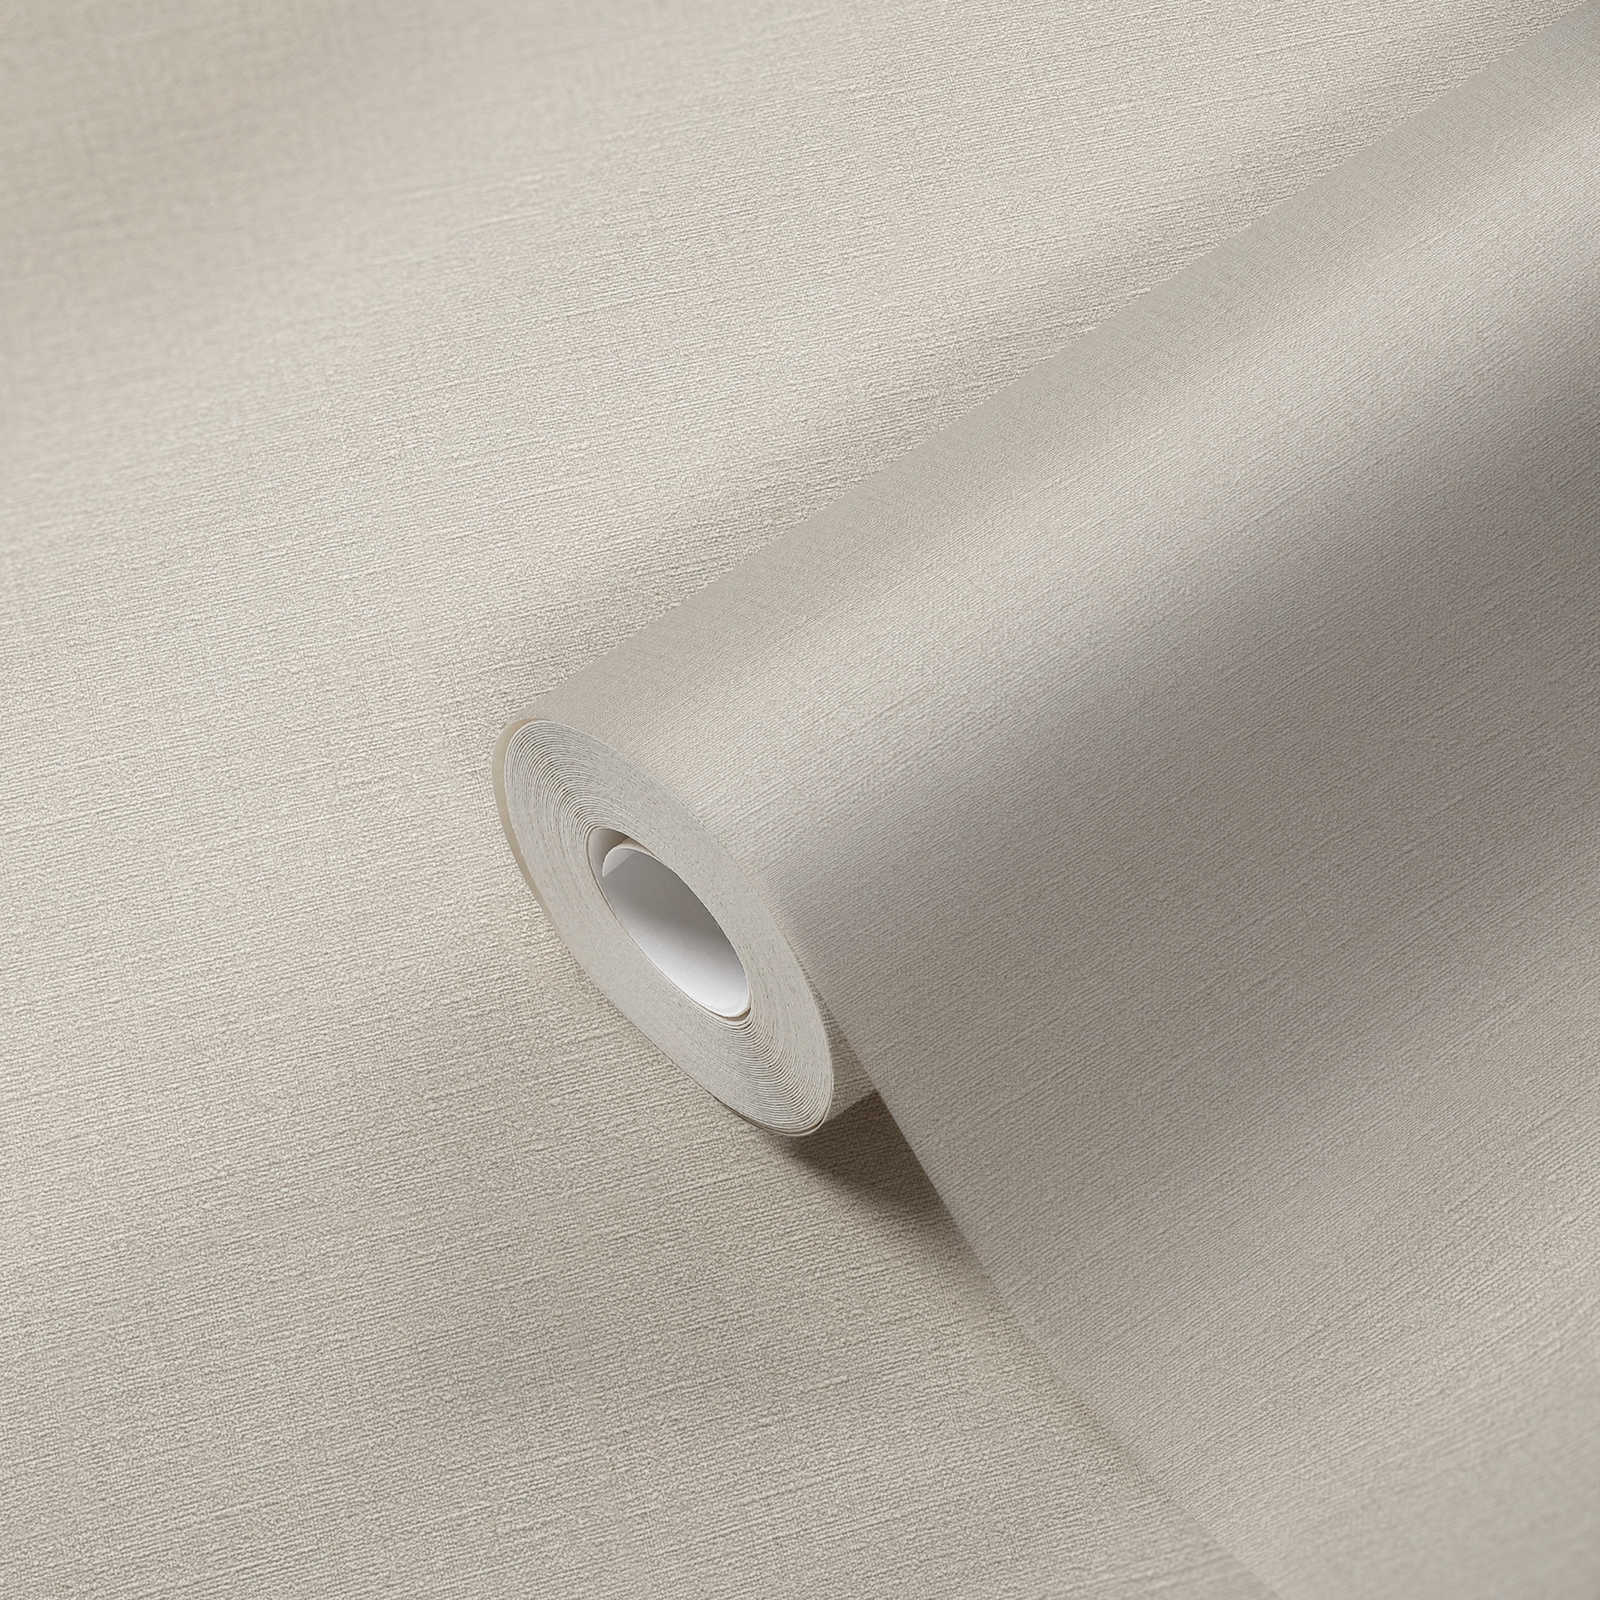             Crème beige behang effen & mat met structuurpatroon
        